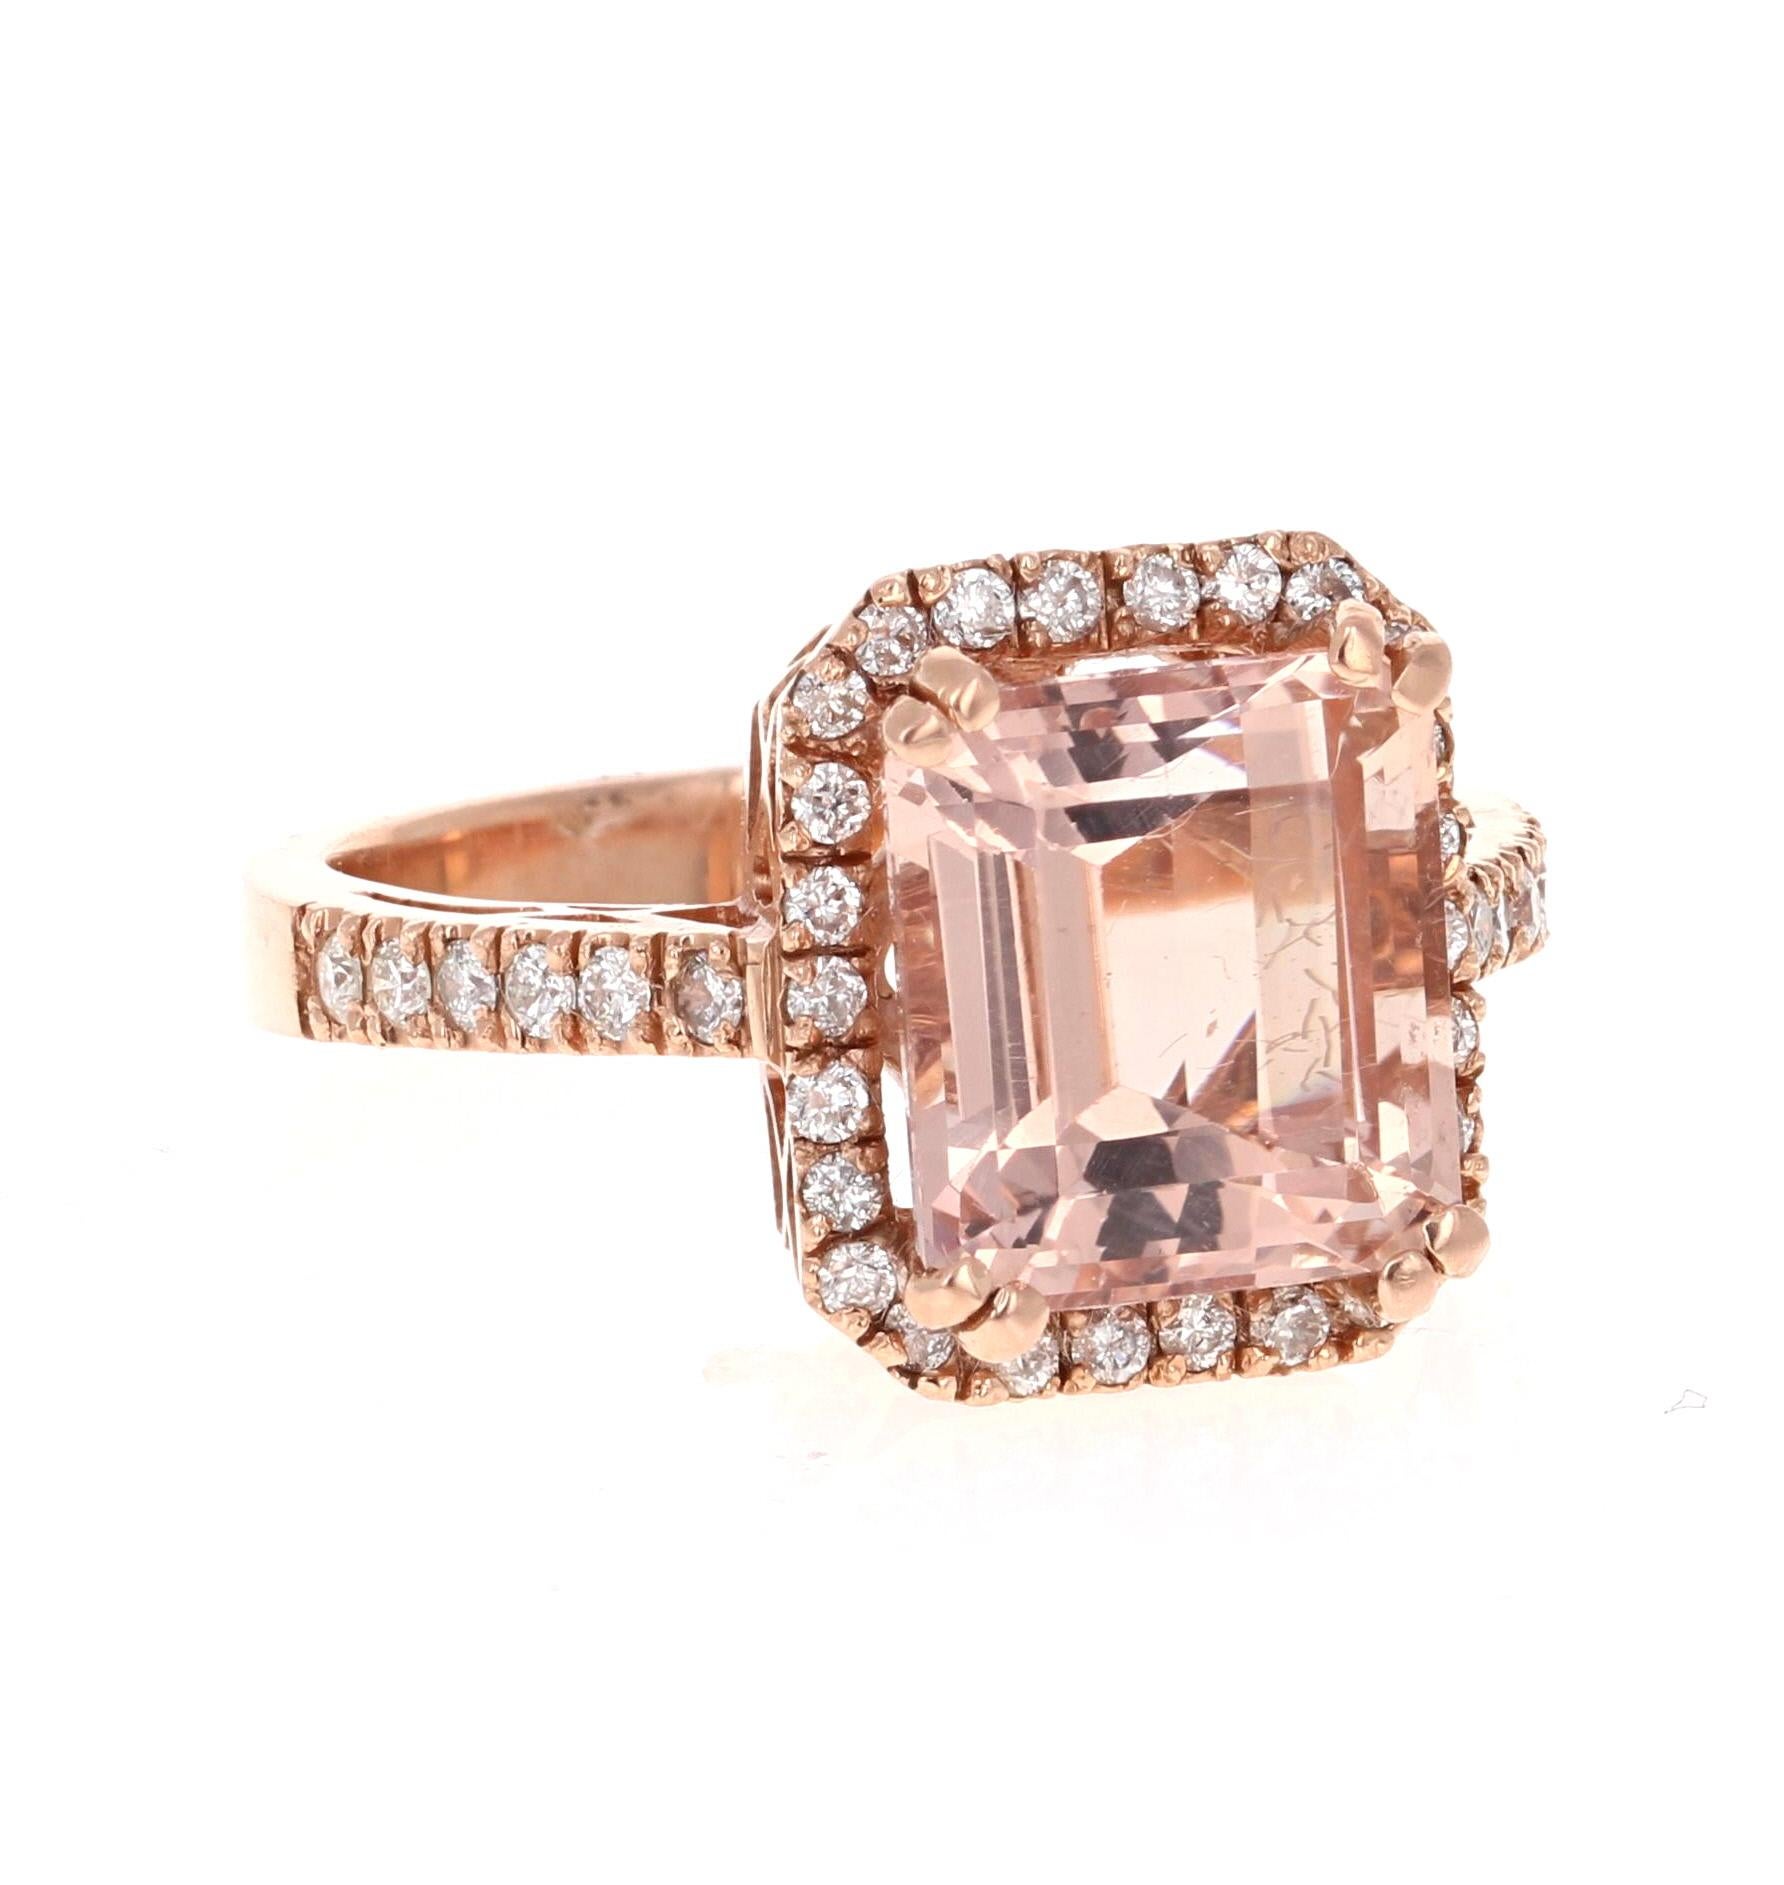 5,34 Karat Morganit Diamant Rose Gold Verlobungsring
Ein wunderschöner Ring, der sich leicht in einen Verlobungsring für einen besonderen Menschen verwandeln lässt!  

Es hat eine atemberaubende 4,92 Karat Smaragdschliff Morganit in der Mitte des